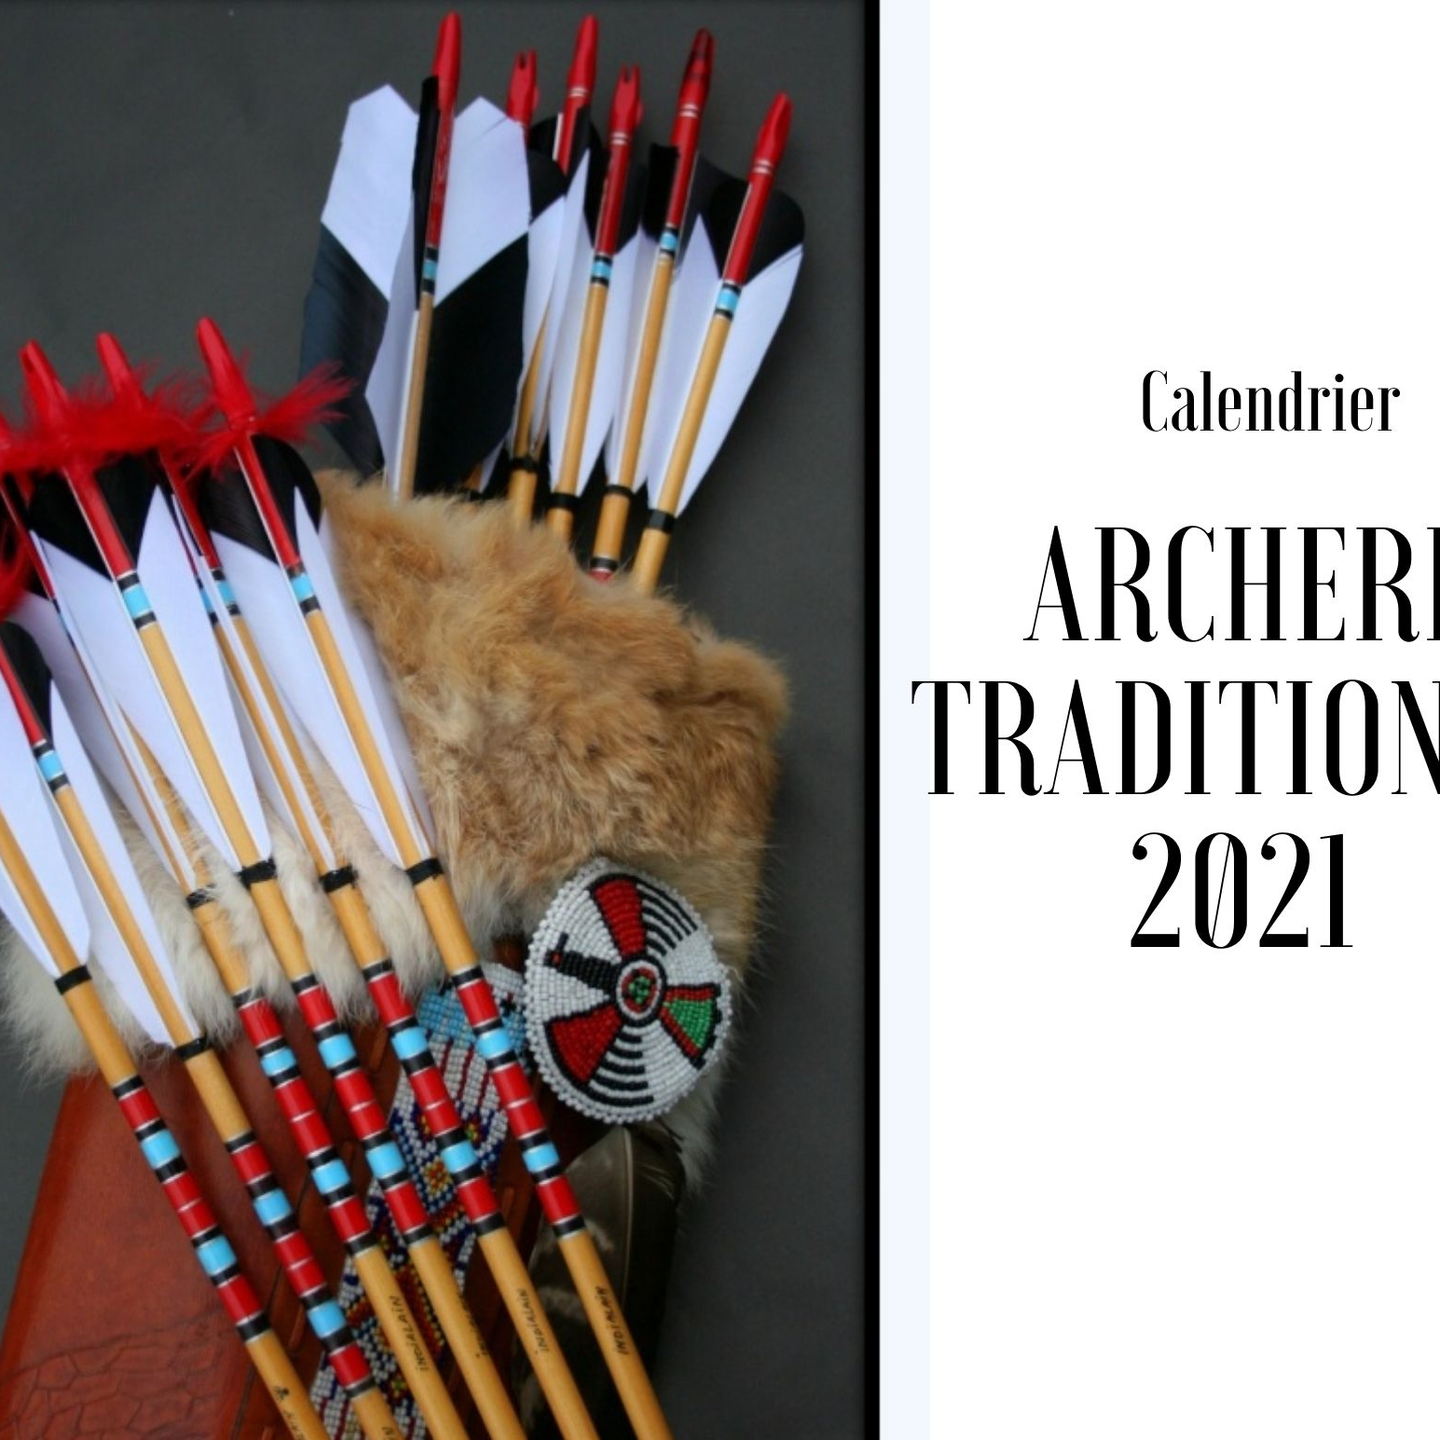 calendrier archerie tradi 2021 95e3d122-04e1-4cc8-ab41-38b68c745bd9